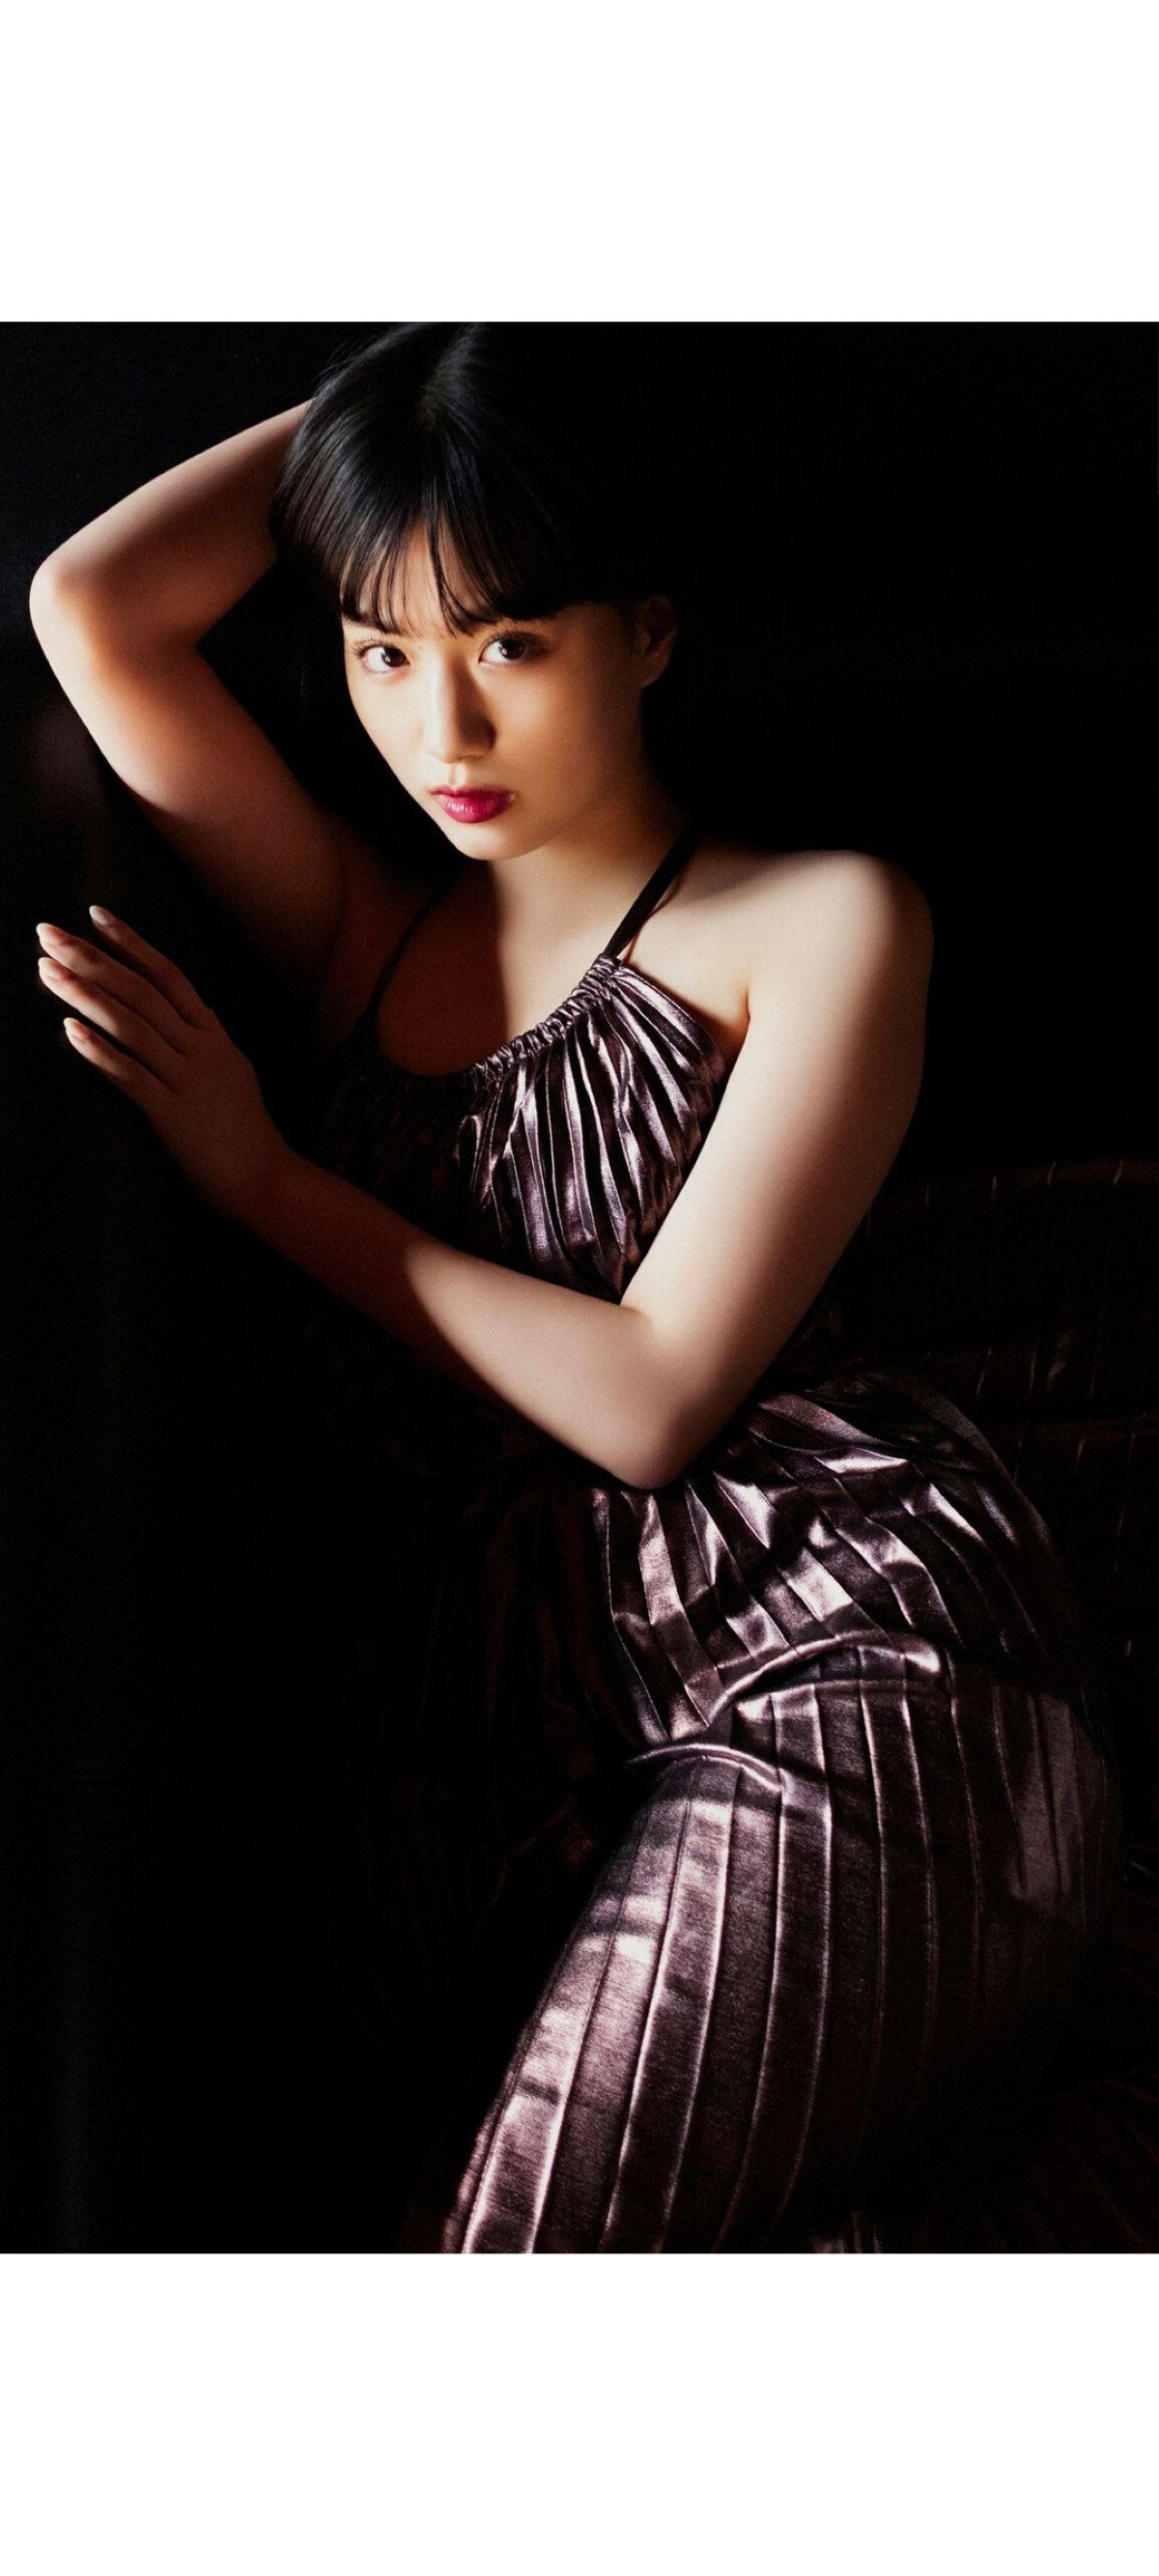 Weekly Photobook 2020 12 07 Noa Tsurushima 鶴嶋乃愛 A natural actress 生まれながらにして女優 0045 6411977944.jpg